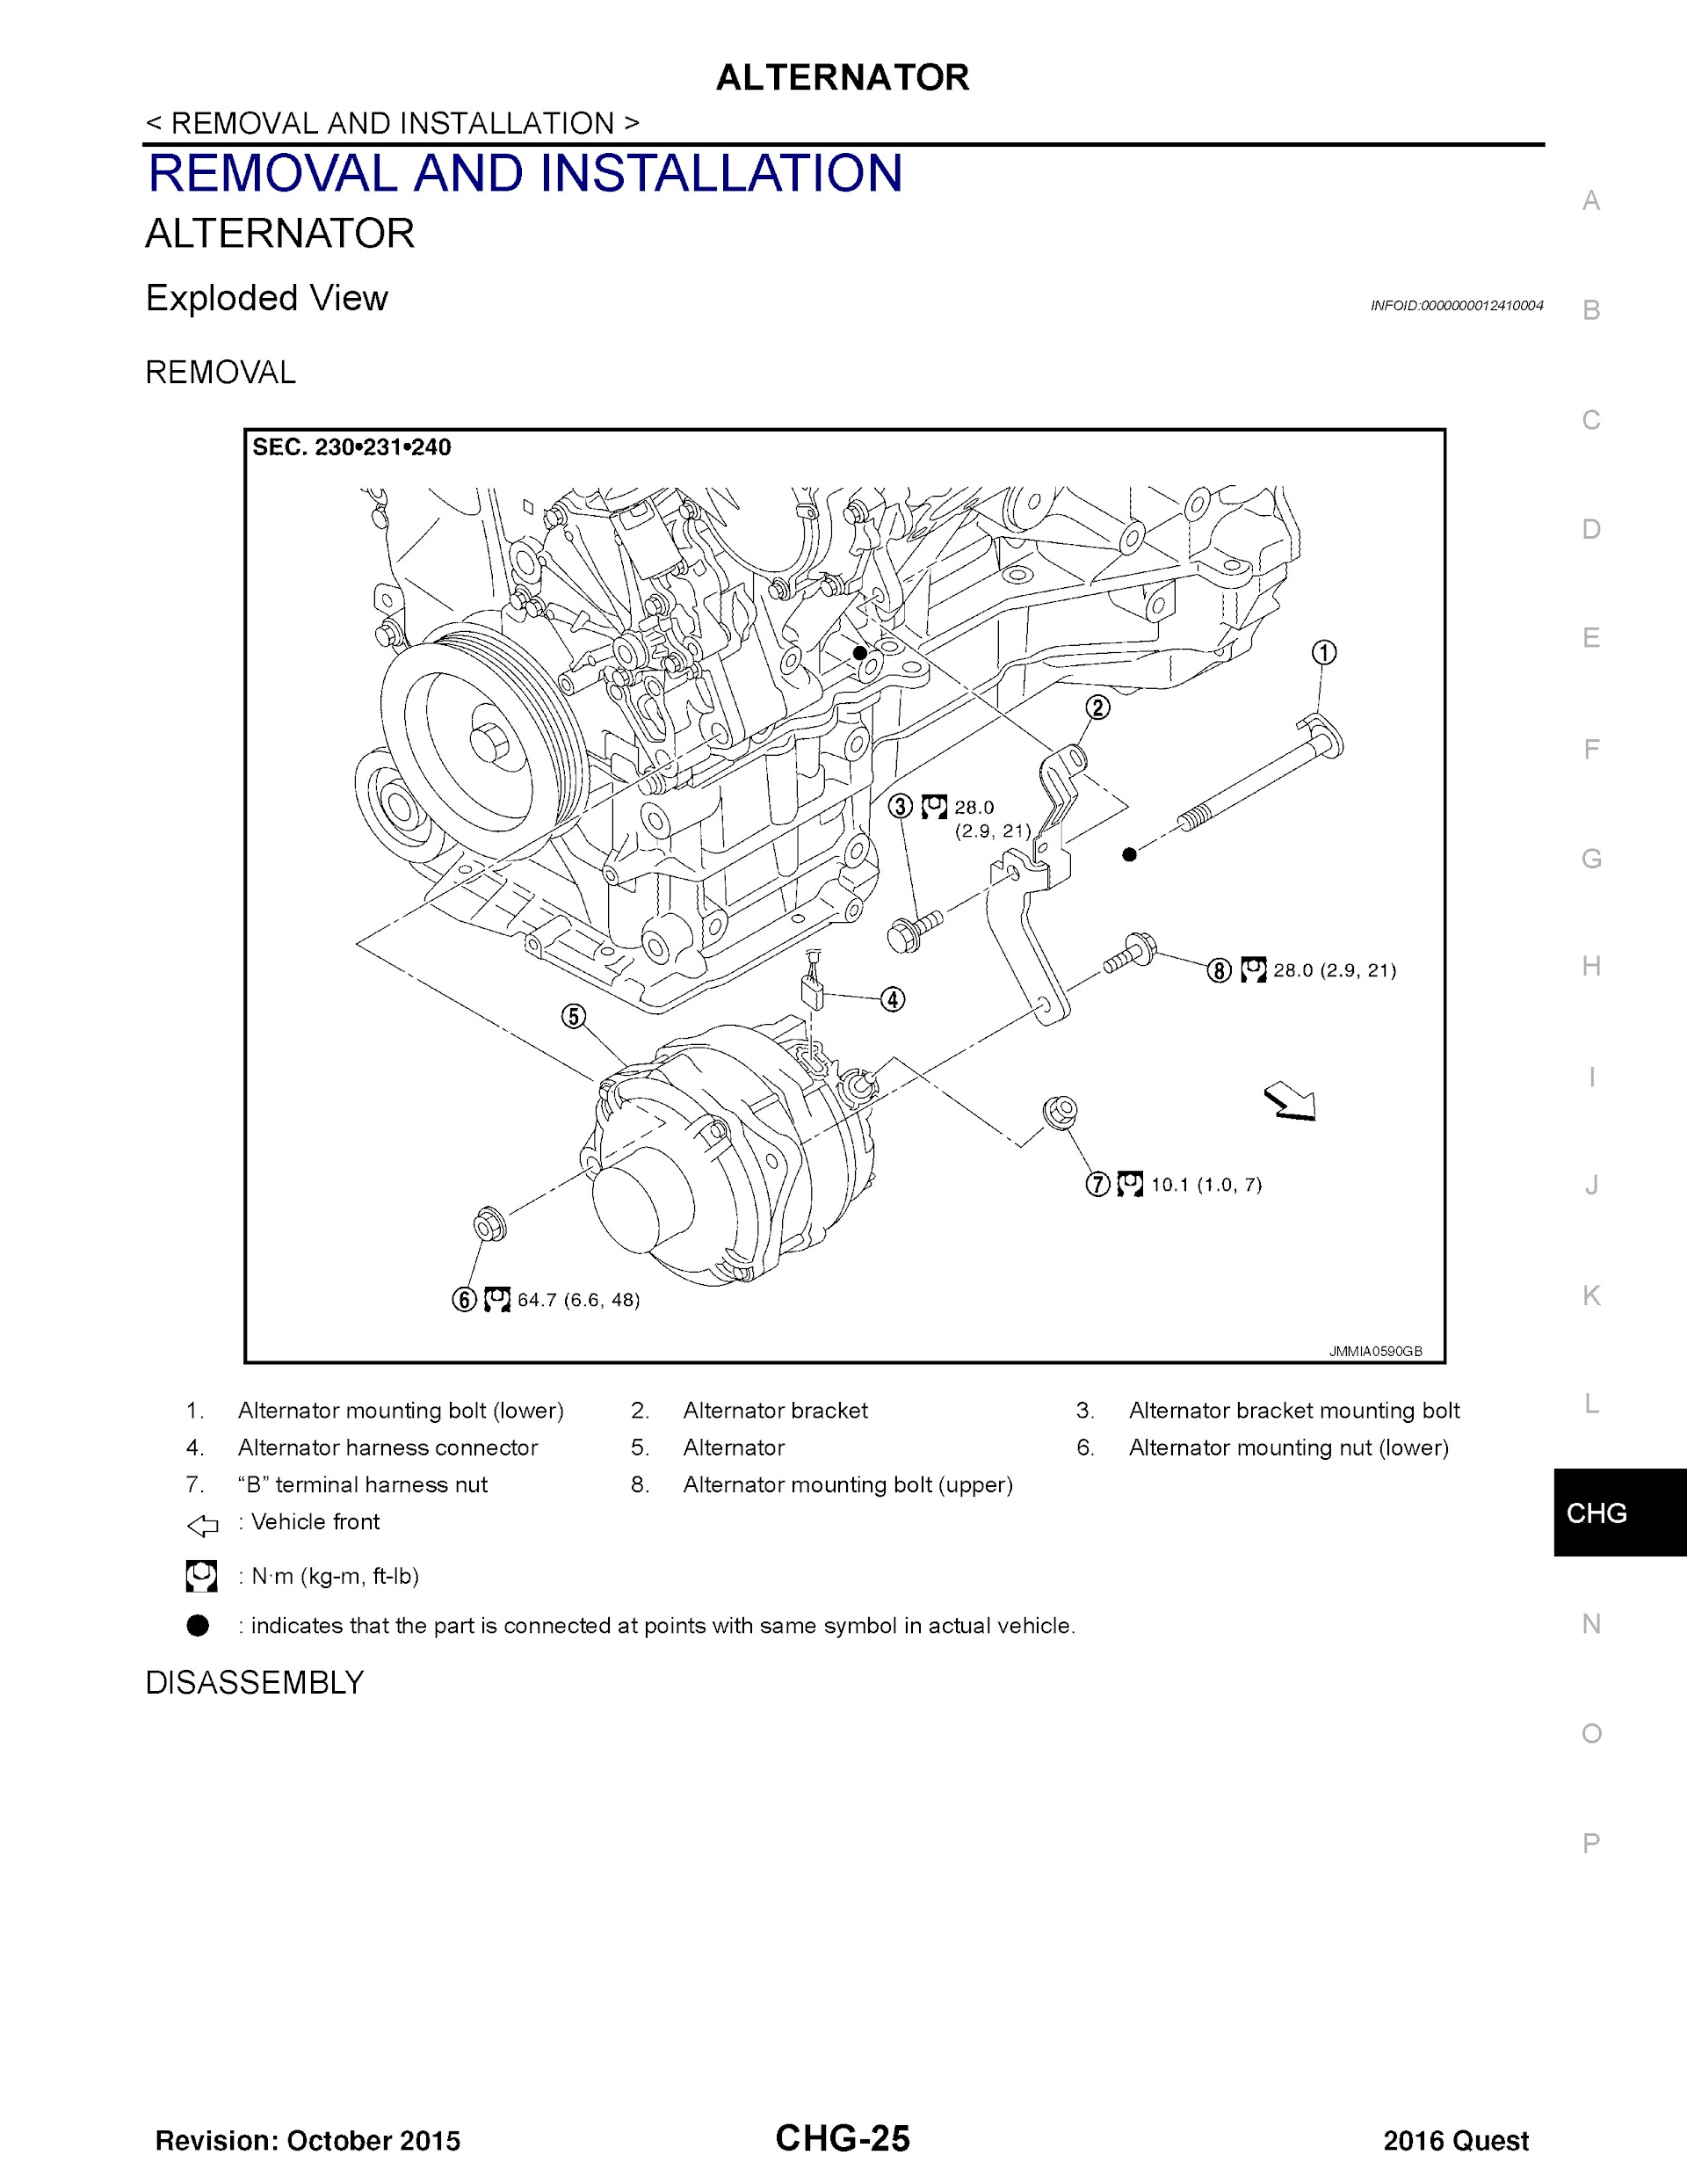 2016 Nissan Quest Repair Manual Repair Manual Alternator Removal And Installation